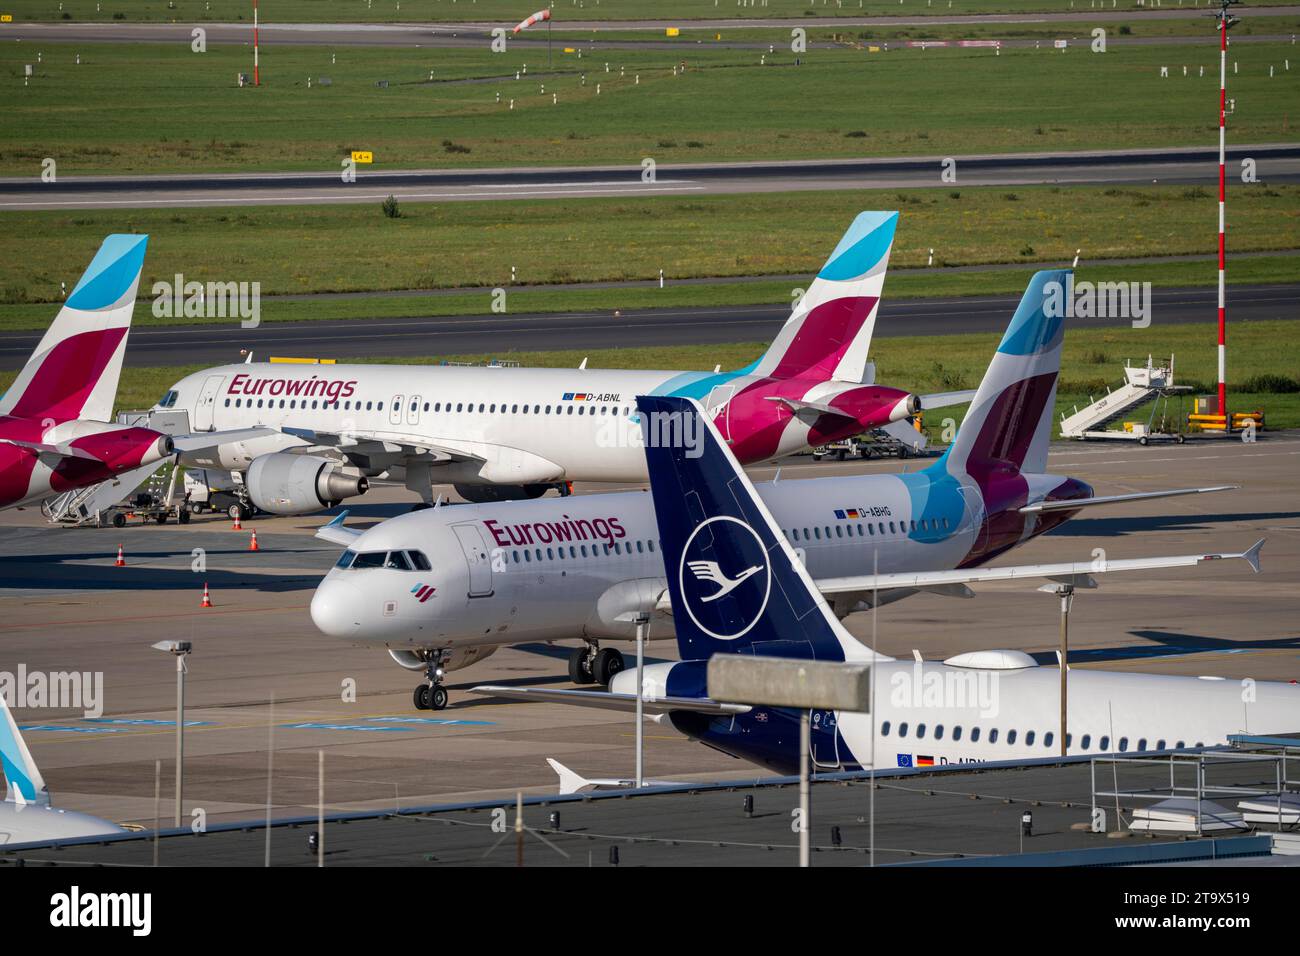 Aeroporto di Düsseldorf, Eurowings Aircraft, sulla via di rullaggio e sulla posizione di parcheggio Foto Stock